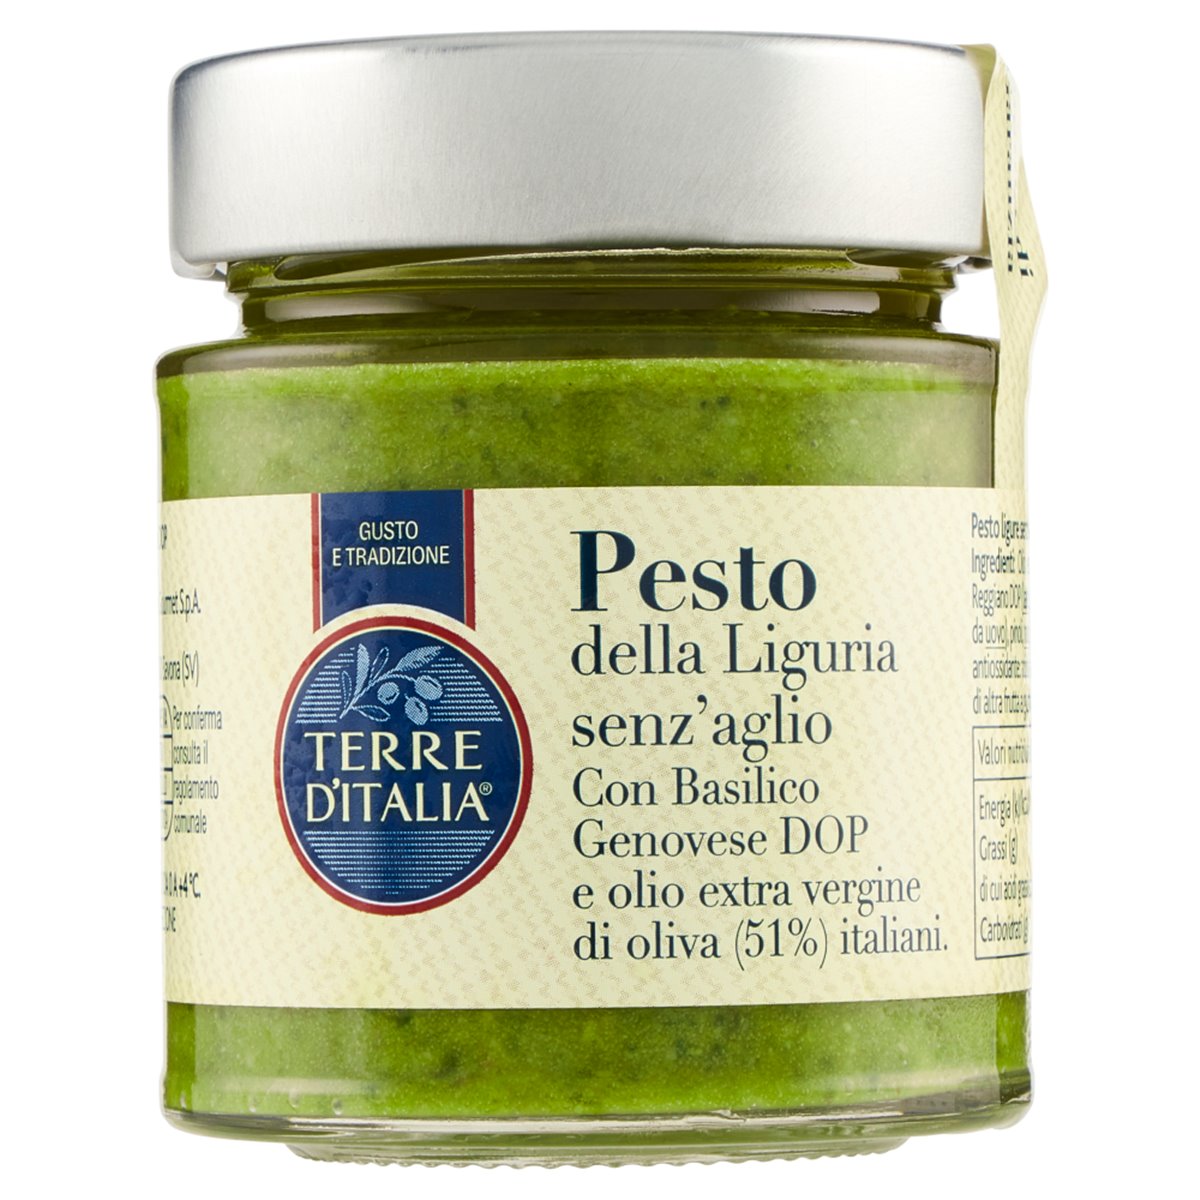 Pesto della Liguria senz'aglio